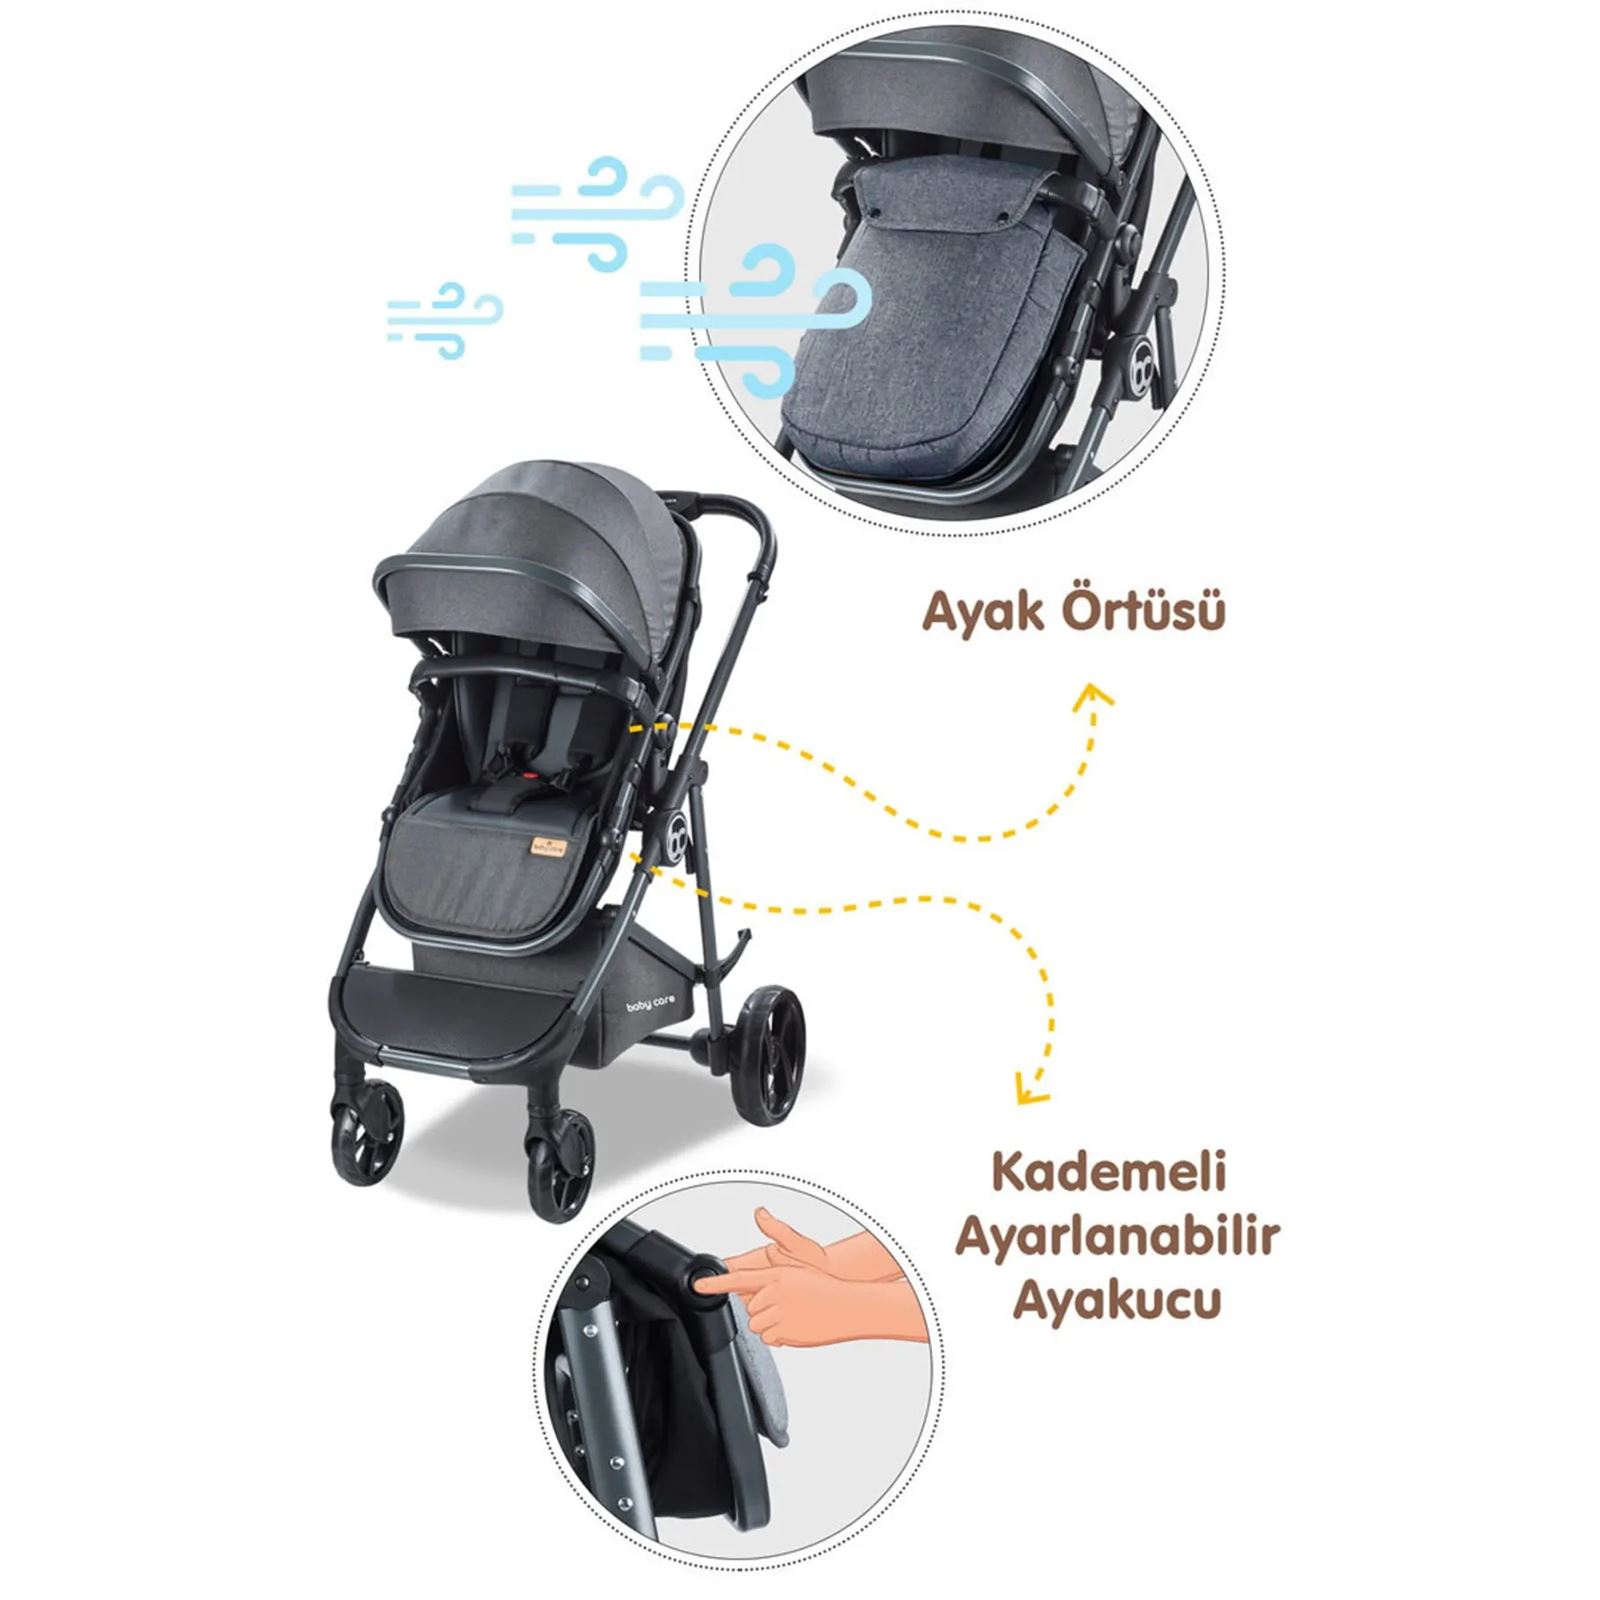 Babycare Exen Alüminyum Travel Sistem Bebek Arabası Siyah